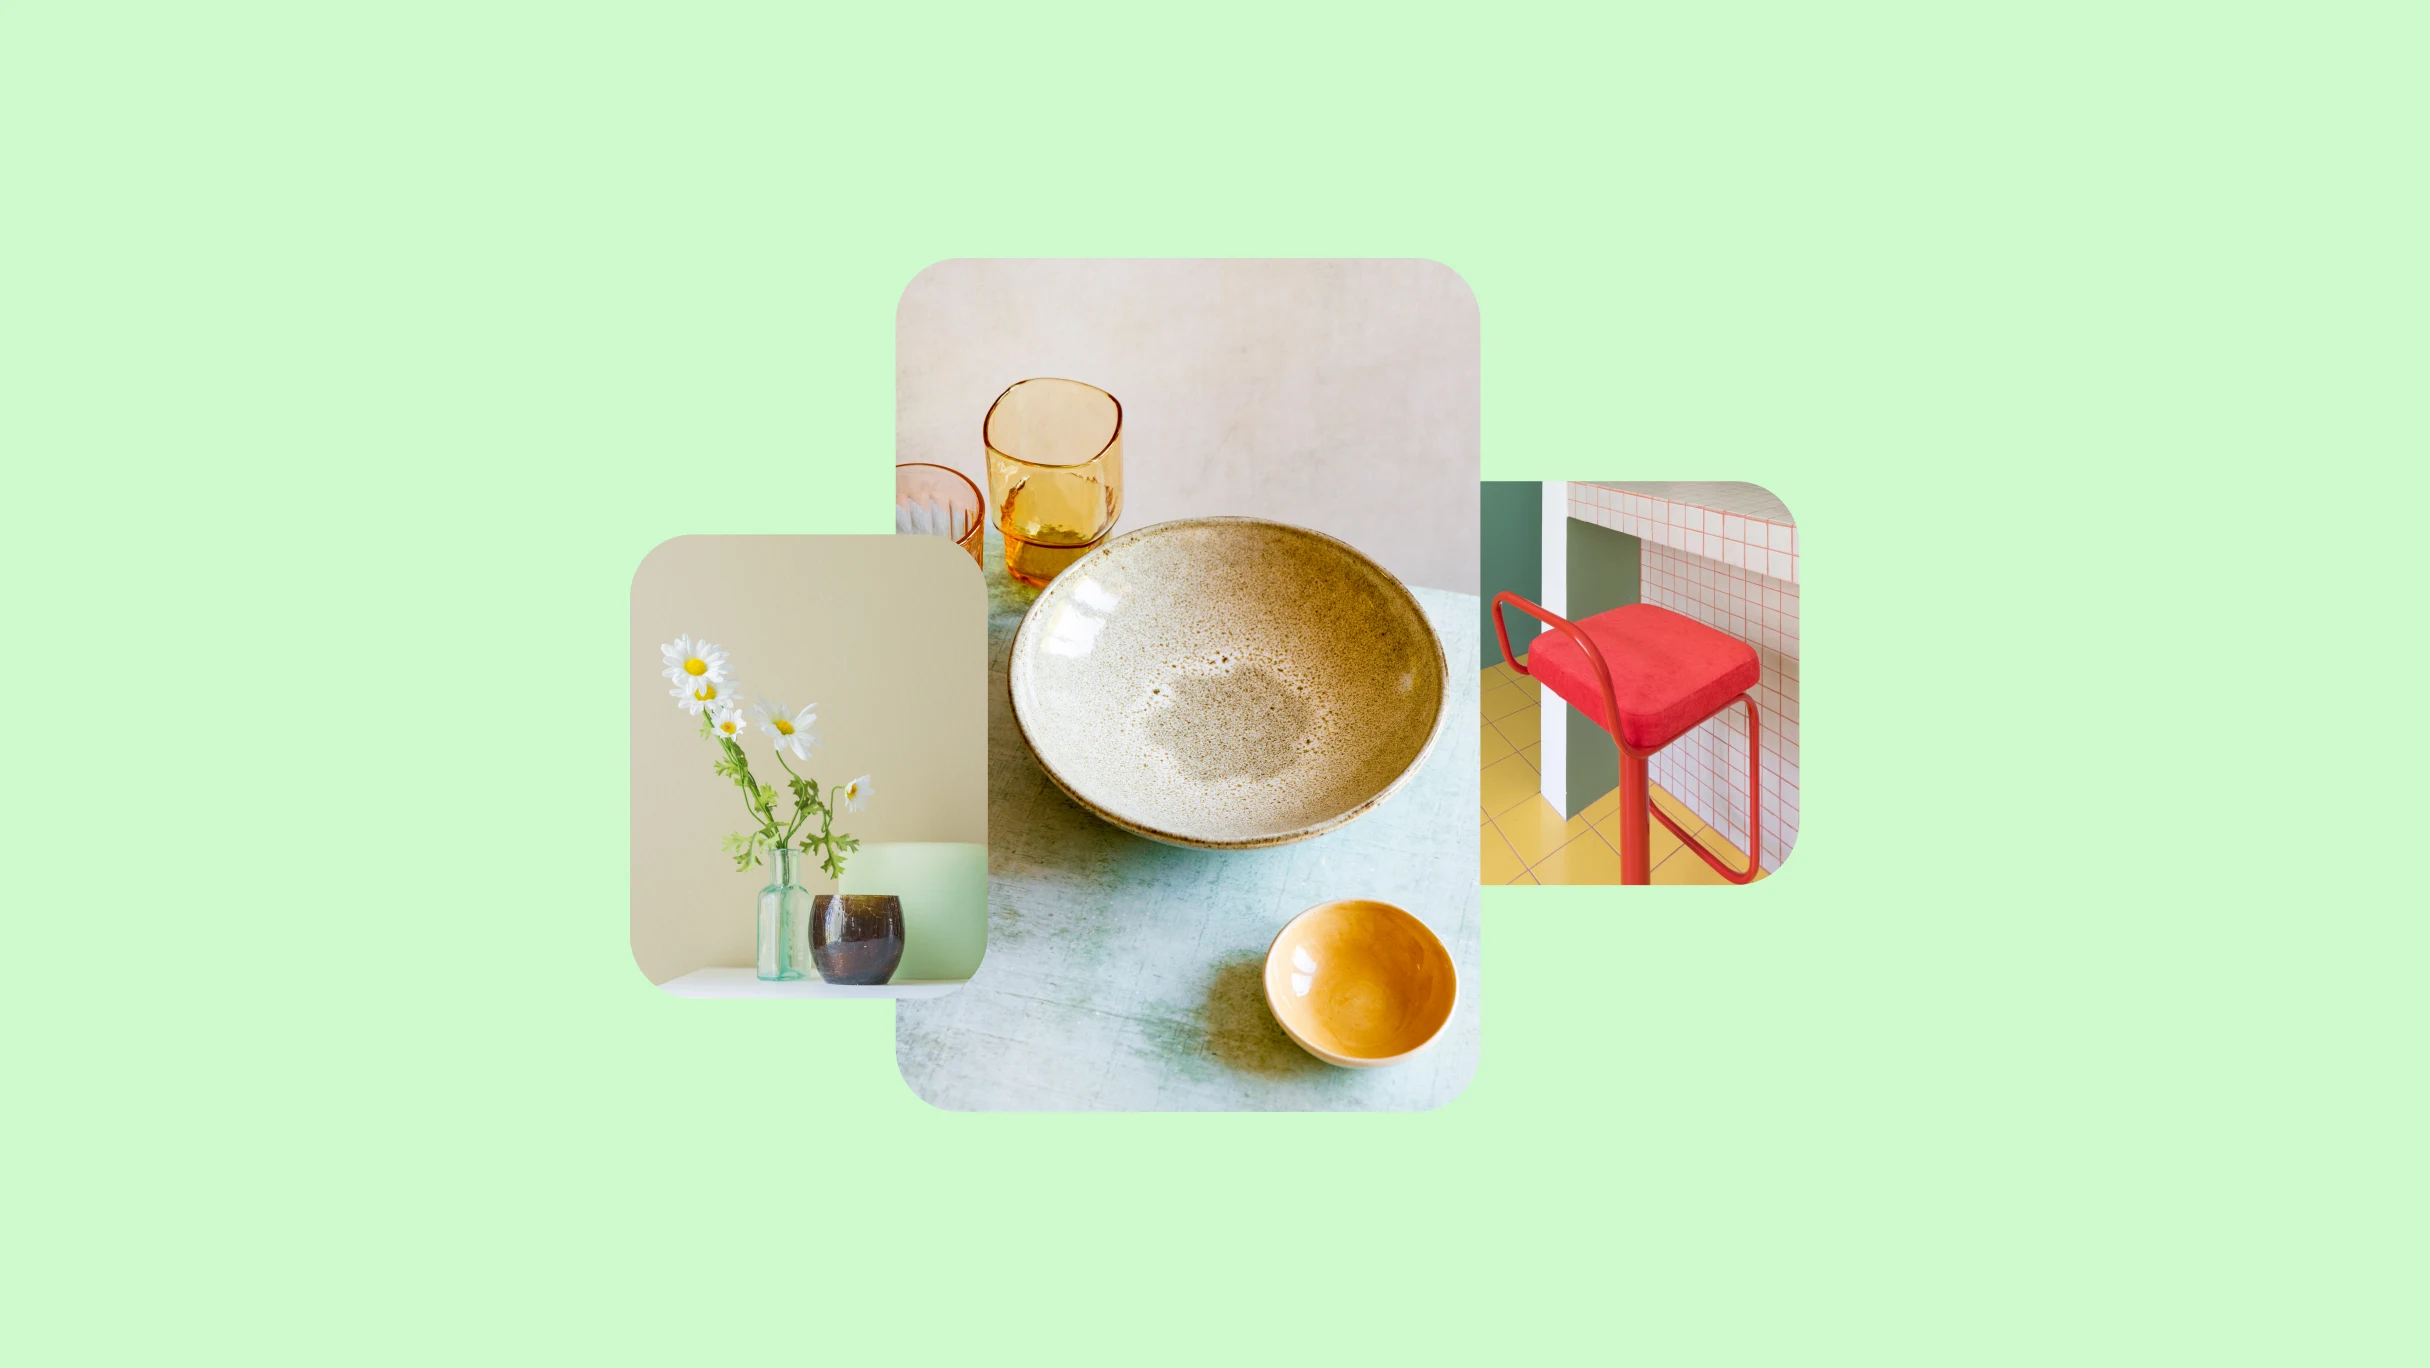 Tre immagini su uno sfondo verde lime. A sinistra, delle margherite in un vaso trasparente. Al centro, una ciotola in ceramica e dei bicchieri. Adestra, una sedia rossa su un bancone.